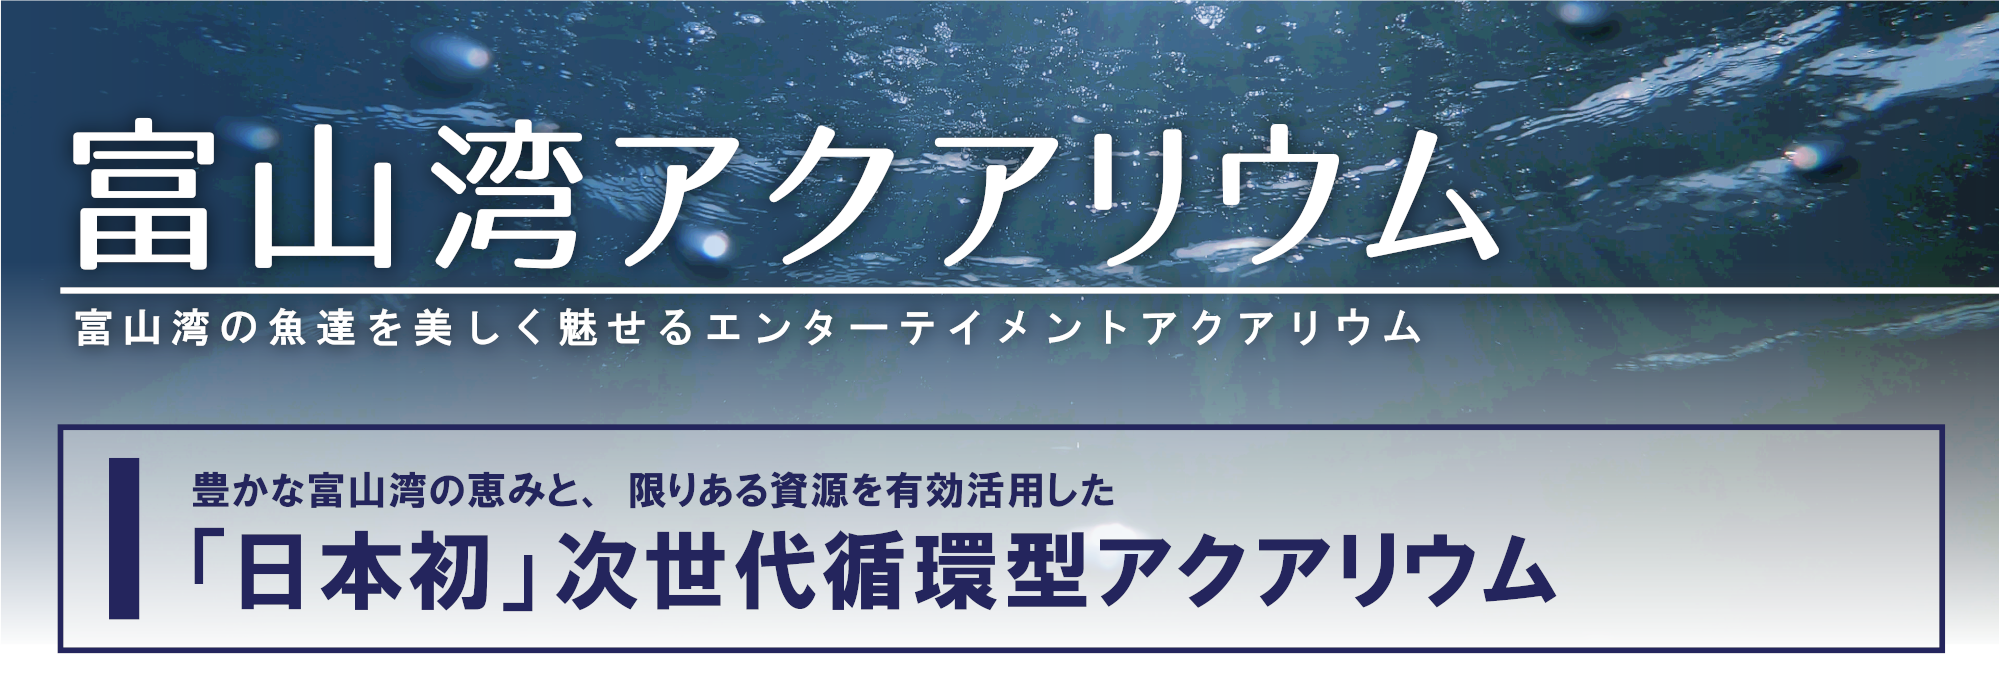 【富山湾アクアリウムの展示】<br>富山湾の魚を間近で見よう